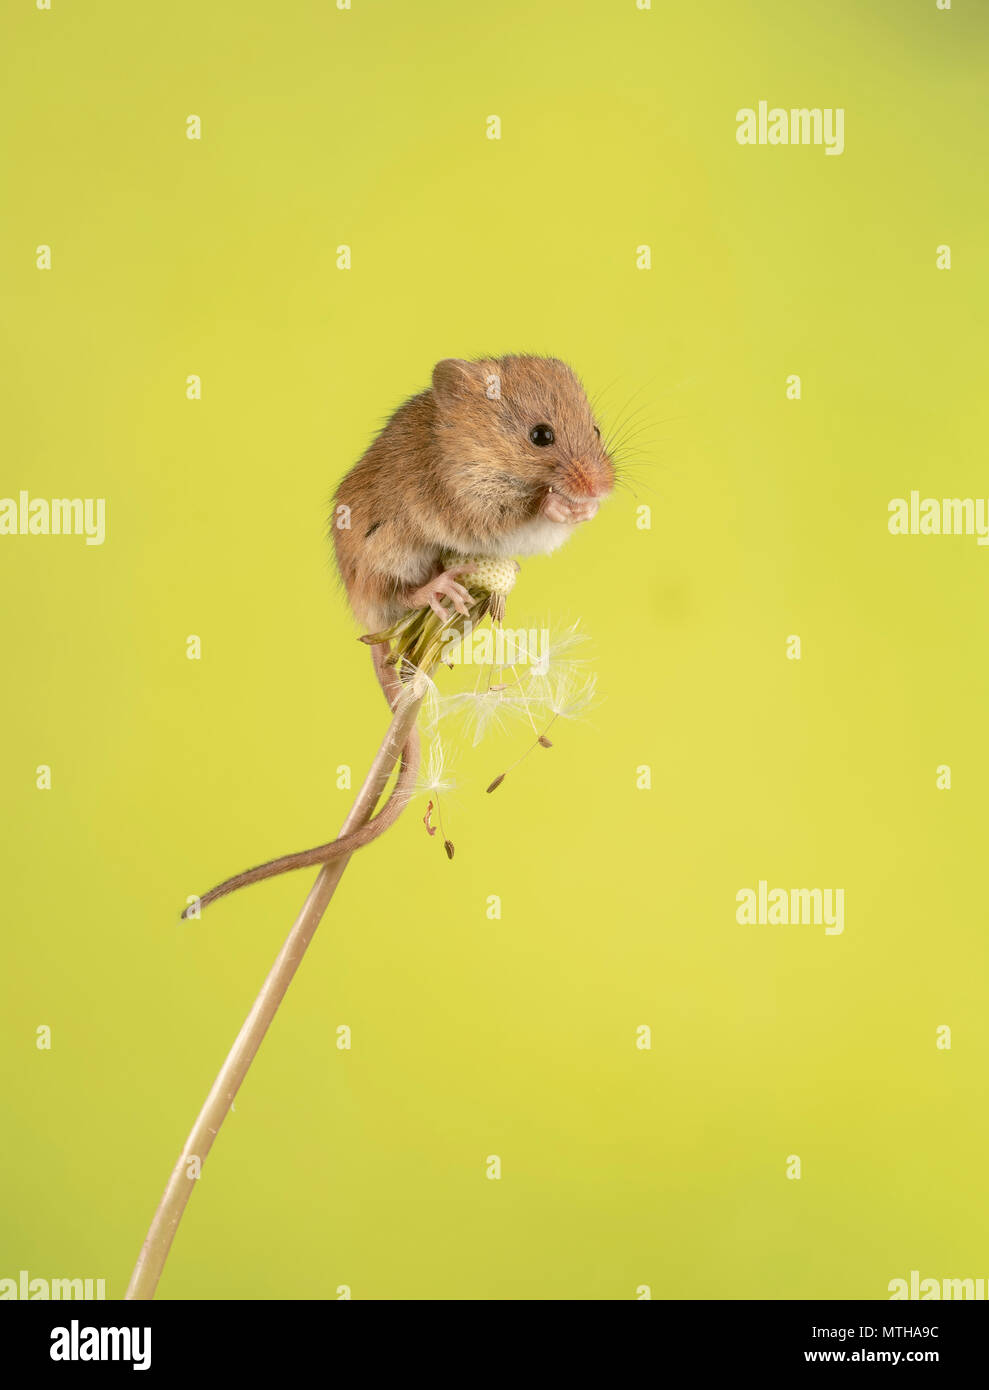 Ratones y leones fotografías e imágenes de alta resolución - Alamy